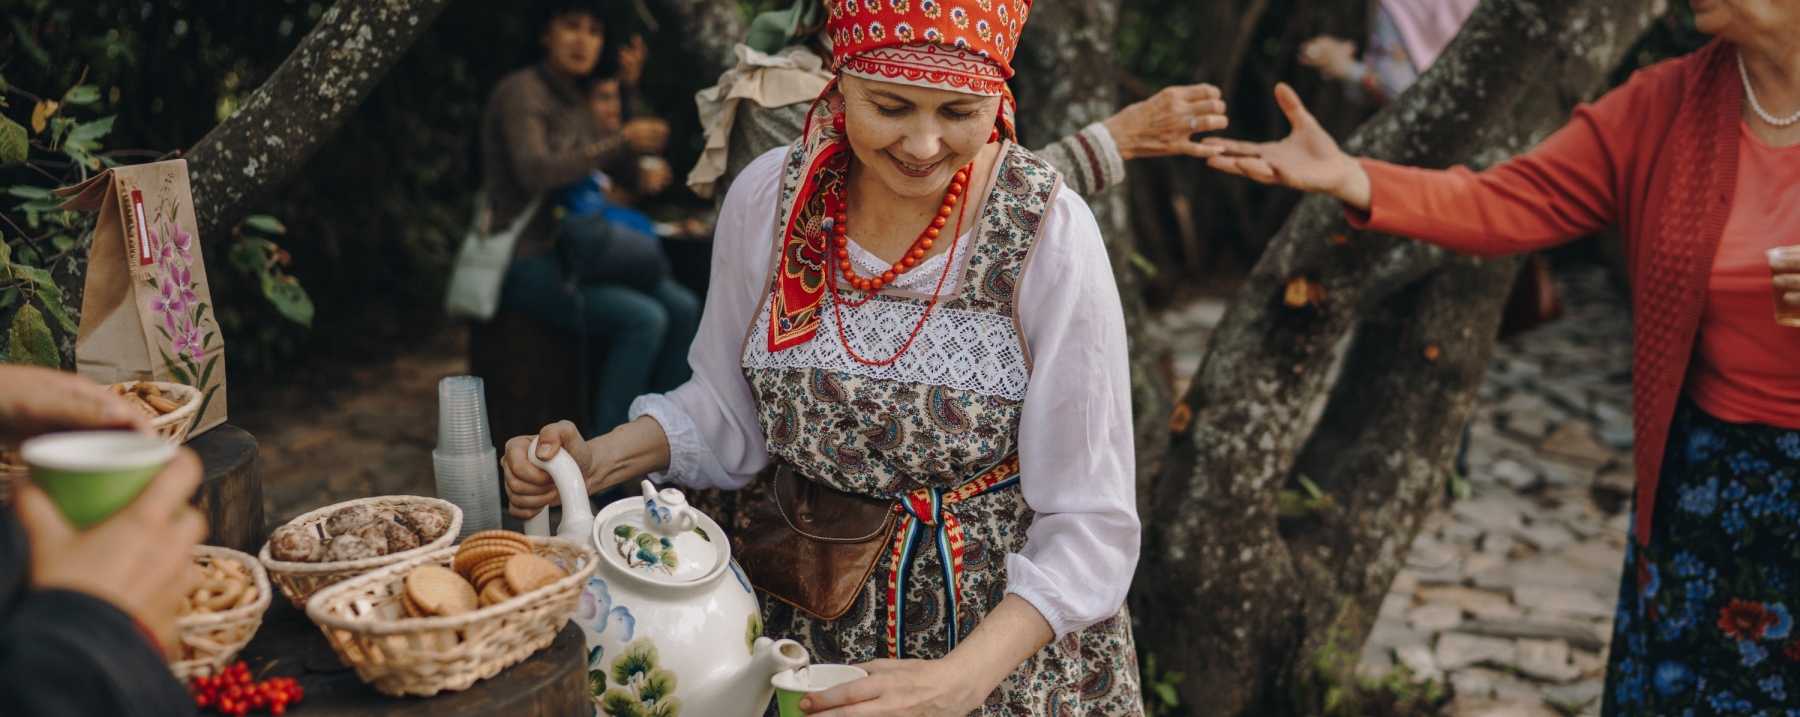 Узнайте больше об истории, культуре и традициях народов Сибири